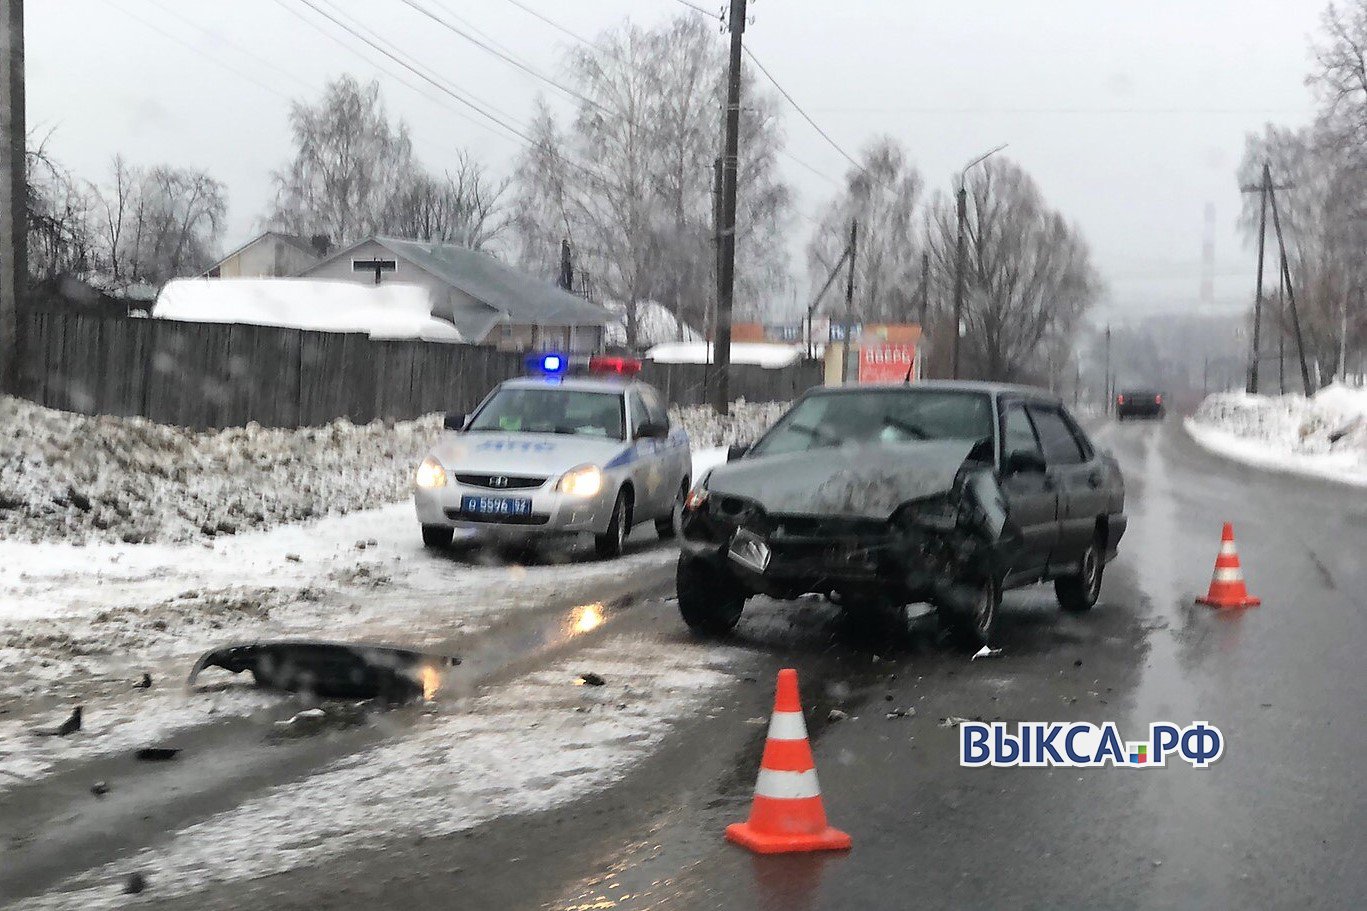 Утром в Антоповке столкнулись два авто